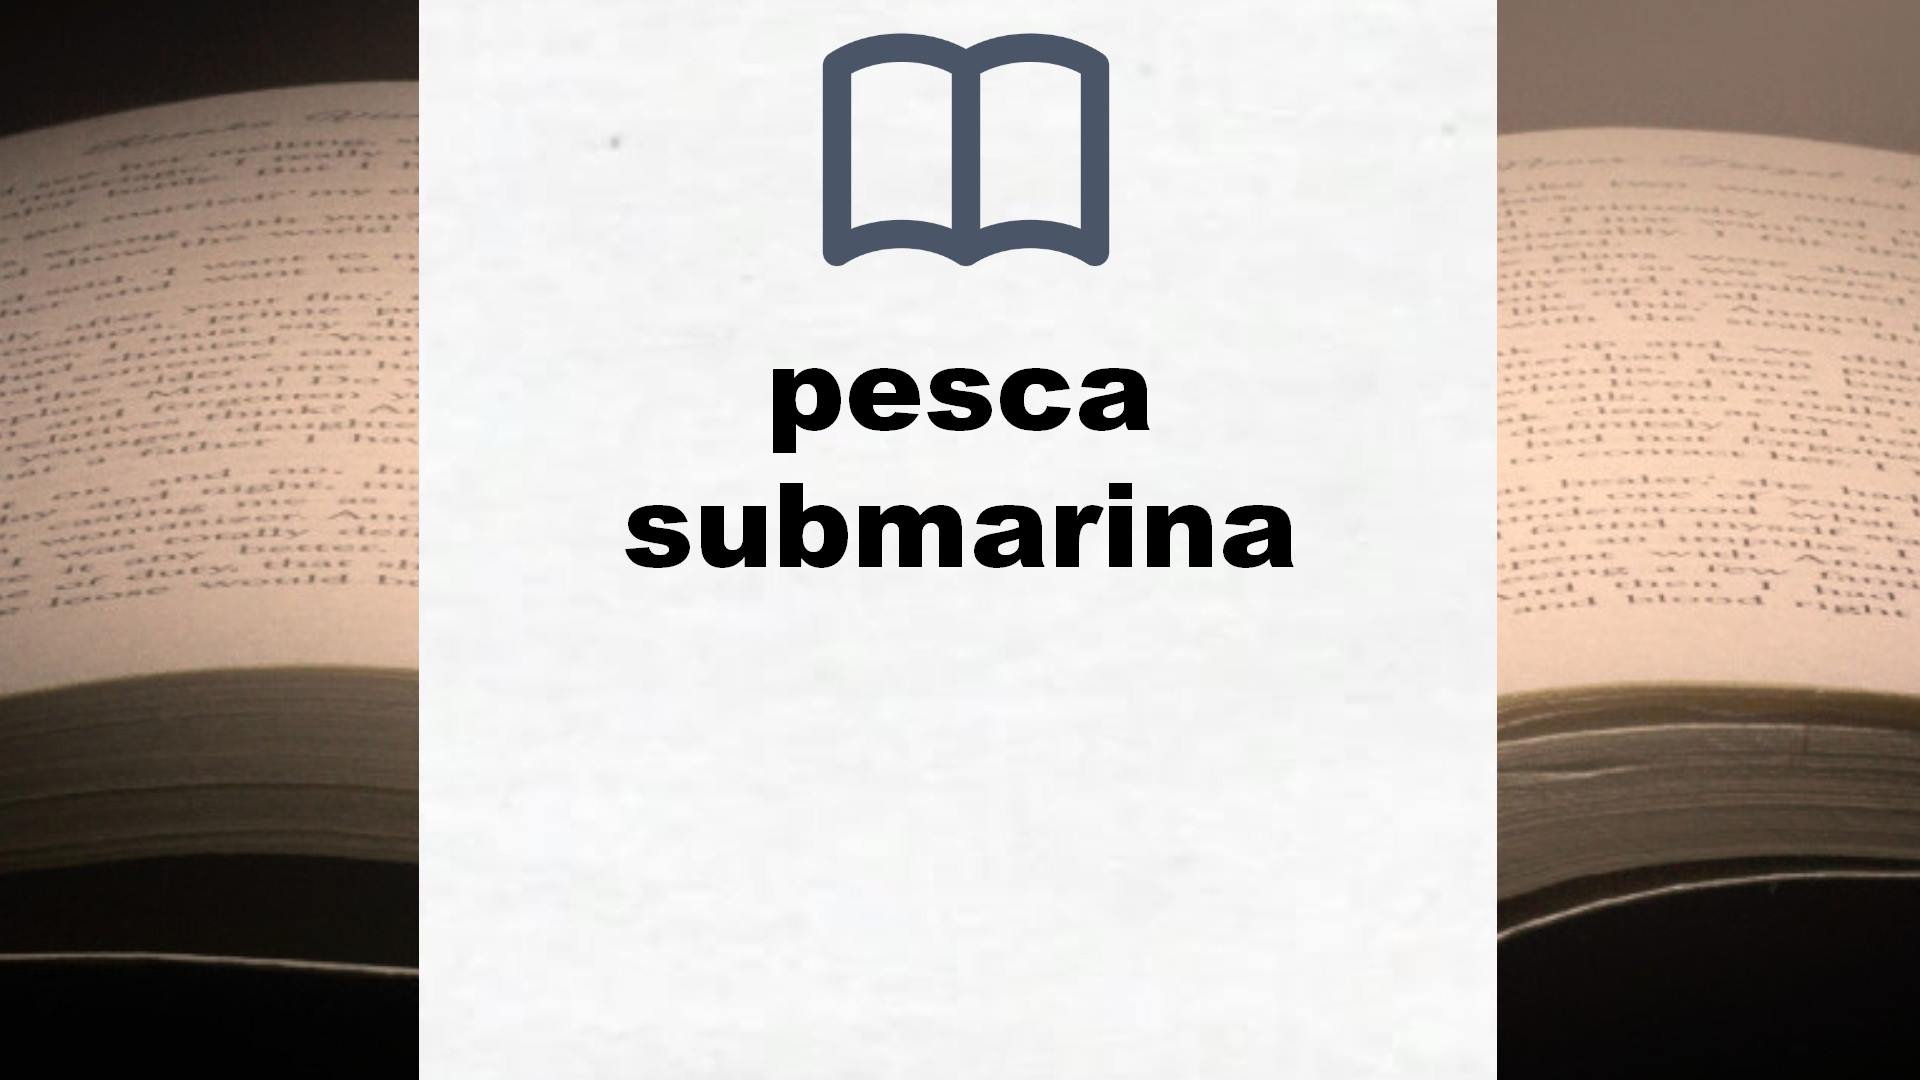 Libros sobre pesca submarina